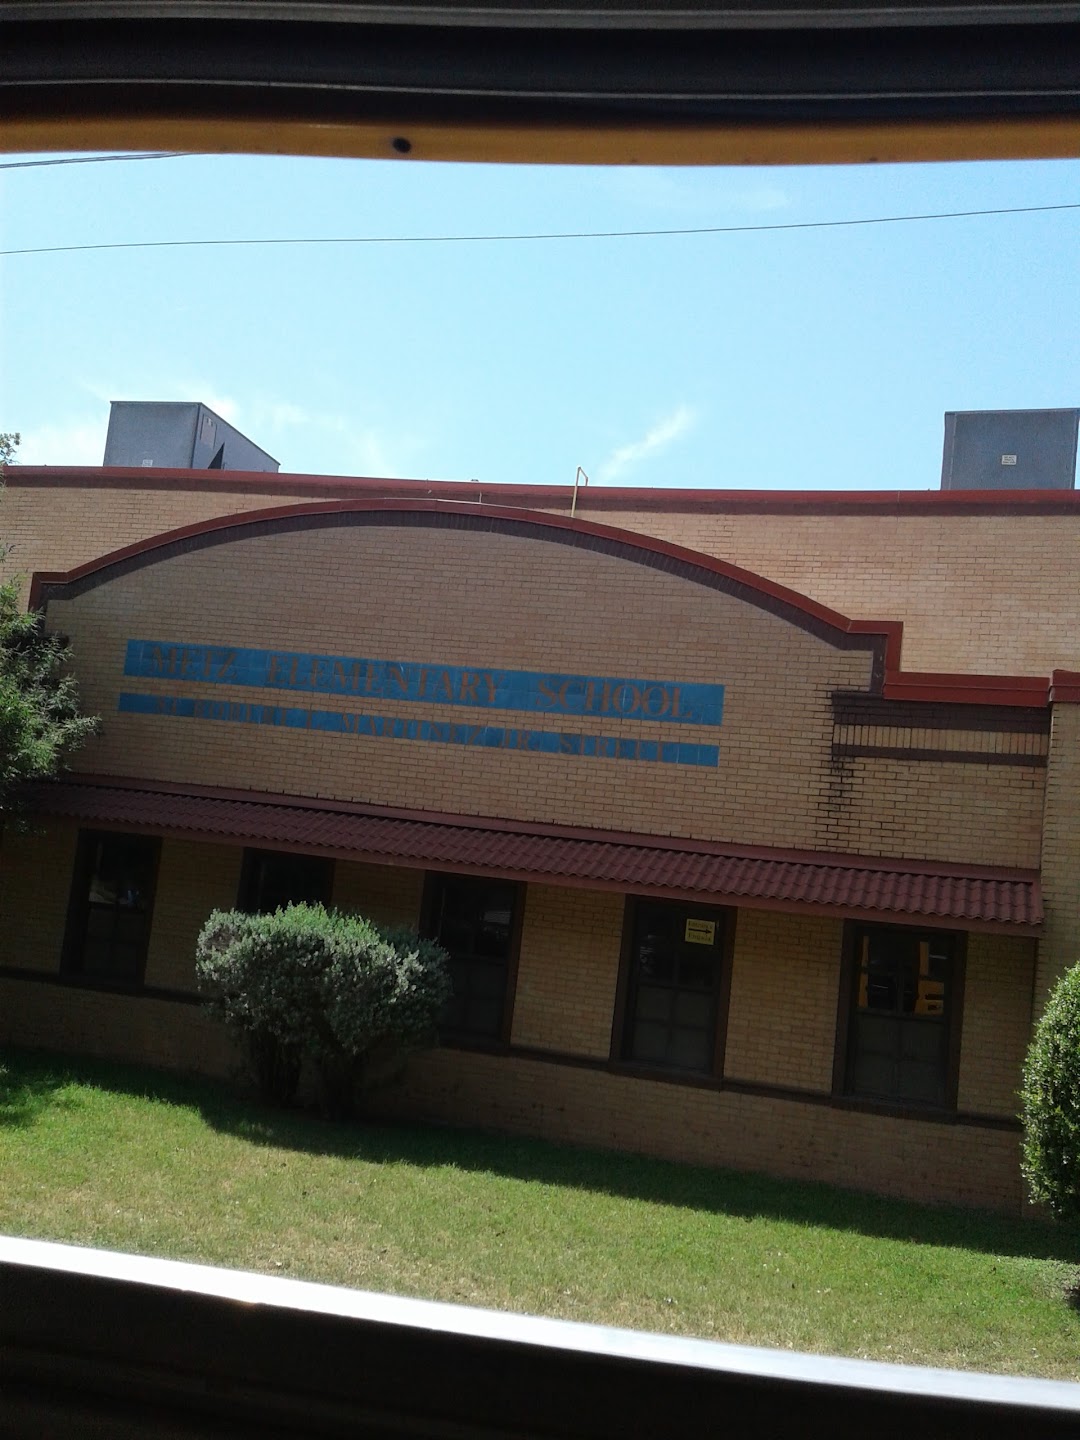 Metz Elementary School